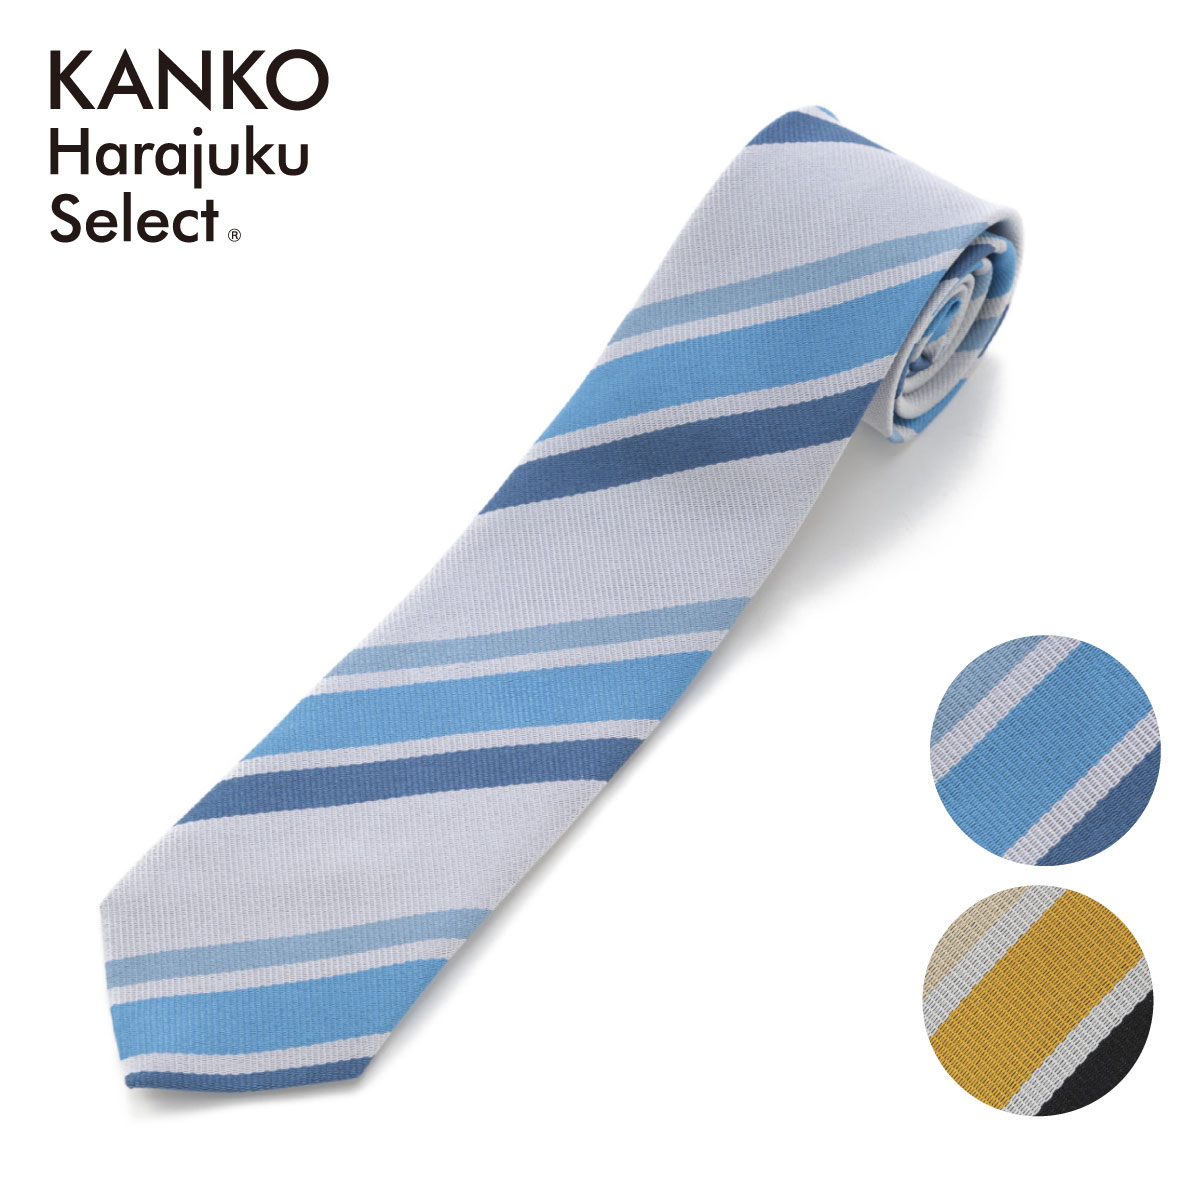 ITEM INFORMATION 商品詳細 ブランド KANKO Harajuku Select / カンコー学生服 素材 ポリエステル100% サイズ F　全長130cm　幅7cm カラー サックス、イエロー 原産国 日本製 特長 パワフルなイエローと爽やかなブルーカラーのネクタイです。どんな制服もネクタイ1つ身につけるだけで、昨日よりもオシャレな制服コーデに！ 取り扱い ドライクリーニング 備考 この商品は当店他店舗でも販売しております。 在庫数の更新は随時行っておりますが、お買い上げいただいた商品が、品切れになってしまうこともございます。その場合、お客様には必ず連絡をいたしますが、万が一入荷予定がない場合は、キャンセルさせていただく場合もございますことをあらかじめご了承ください。 素材の注意書き お使いのモニターの発色具合によって、実際のものと色が異なる場合がございます。